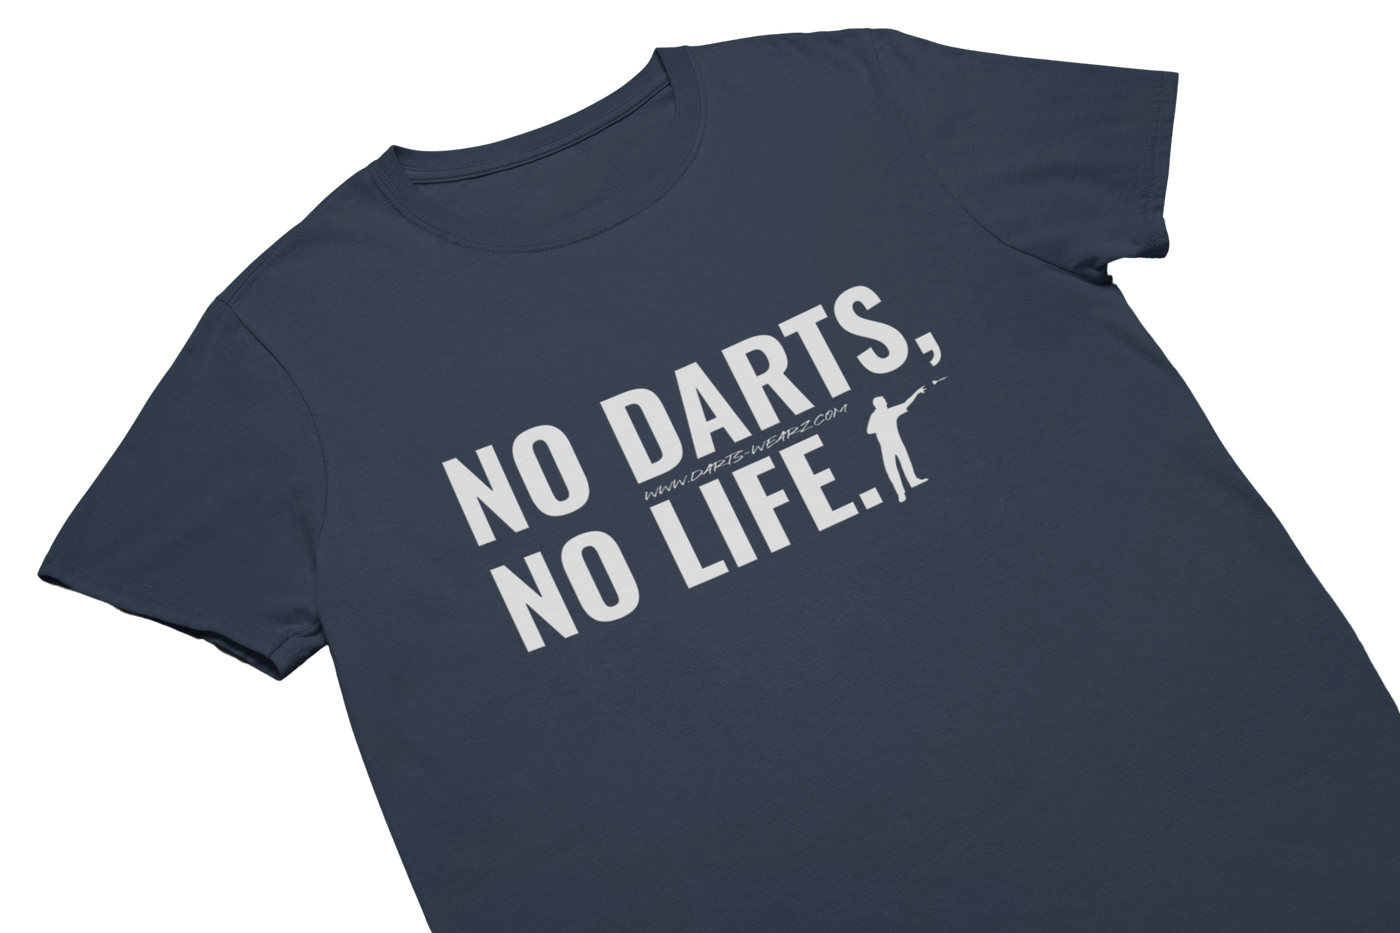 NO DARTS NO LIFE - T-Shirt Navy